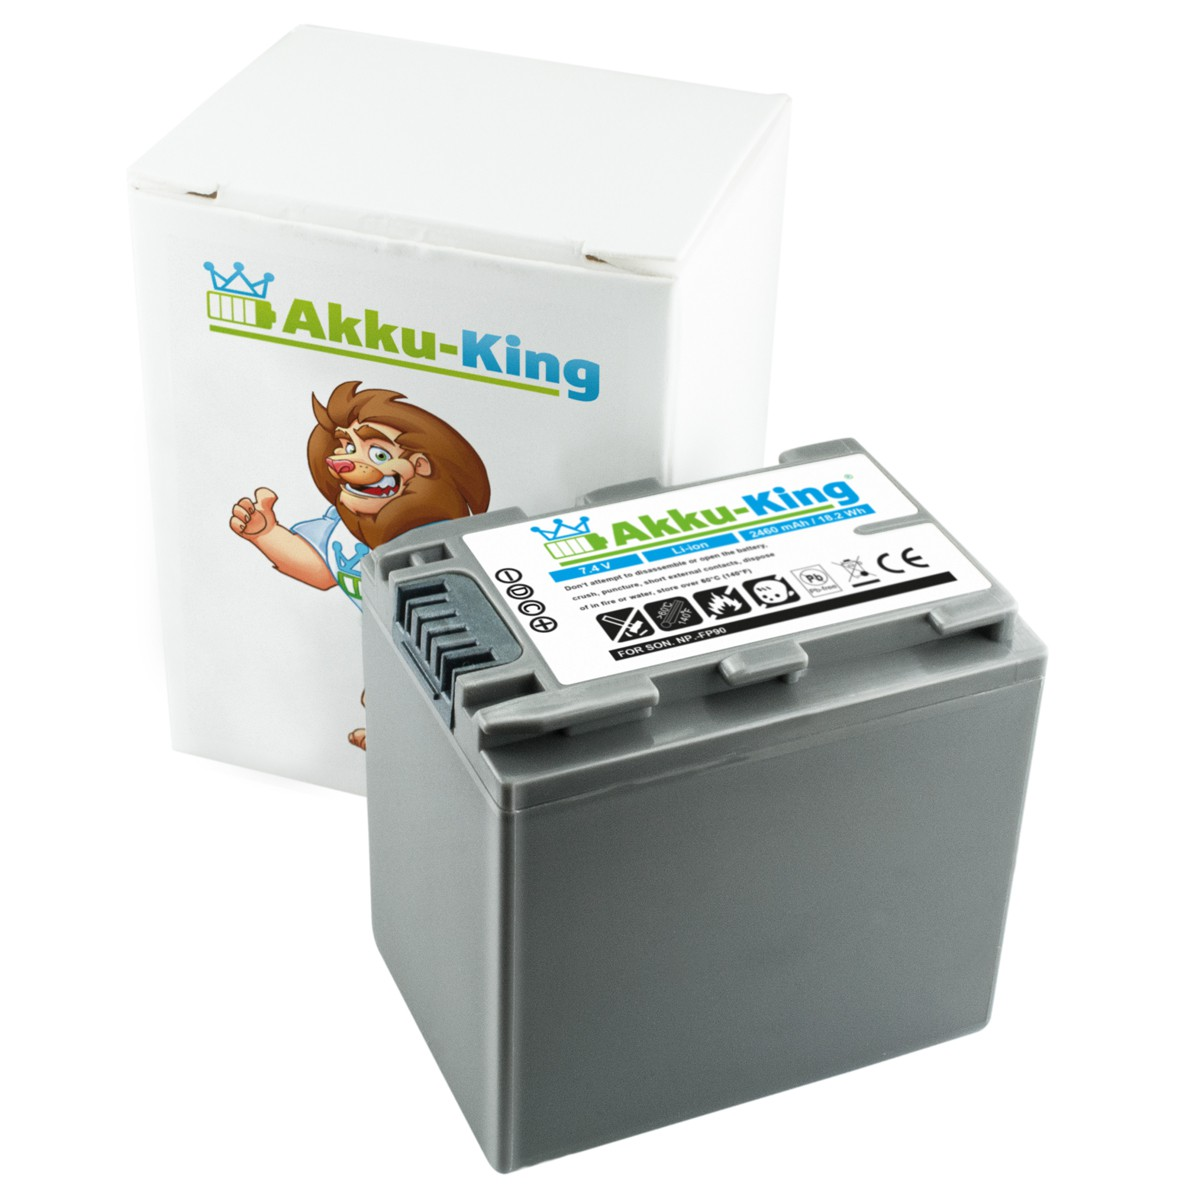 AKKU-KING Akku kompatibel mit Sony Kamera-Akku, 7.4 NP-FP90 Li-Ion Volt, 2460mAh